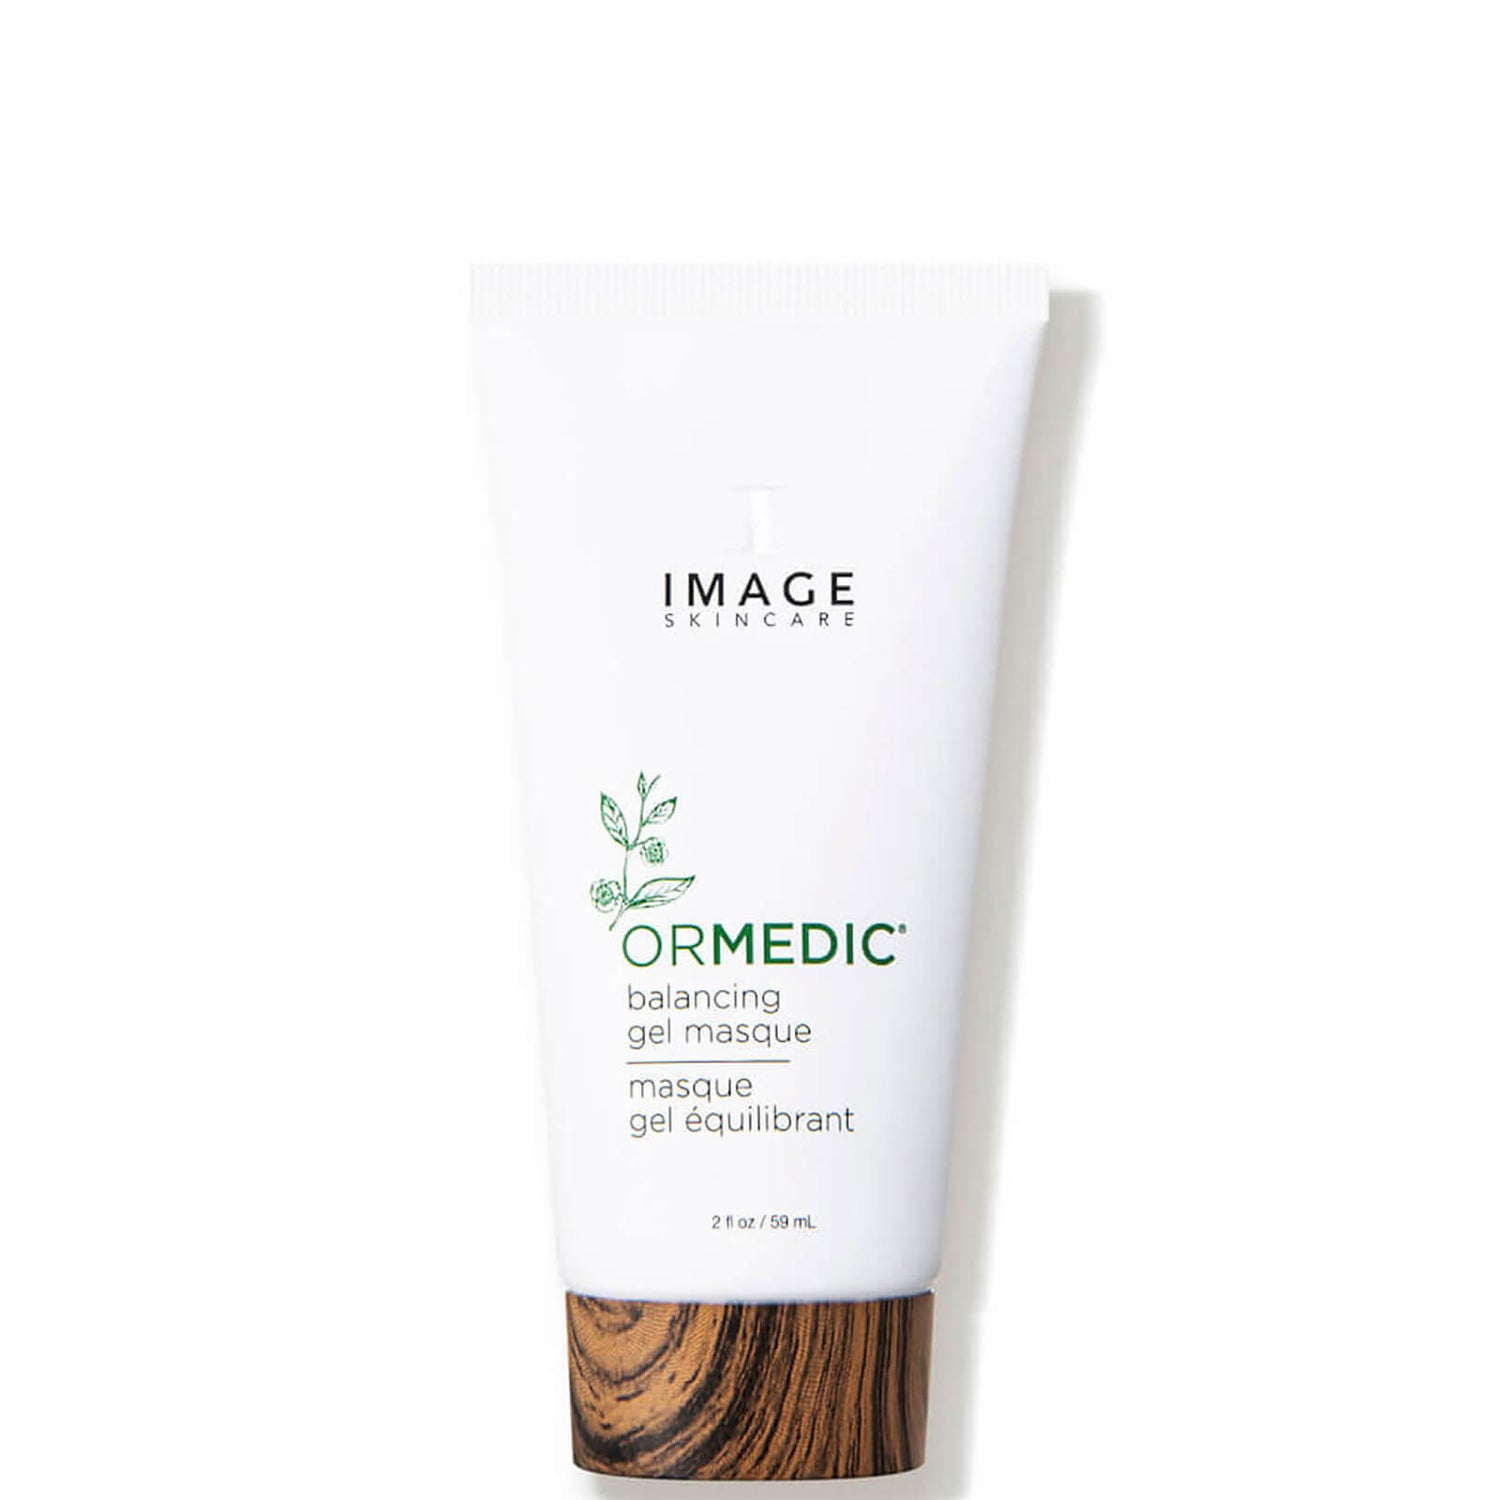 IMAGE Skincare ORMEDIC Balancing Gel Masque (2 fl. oz.)